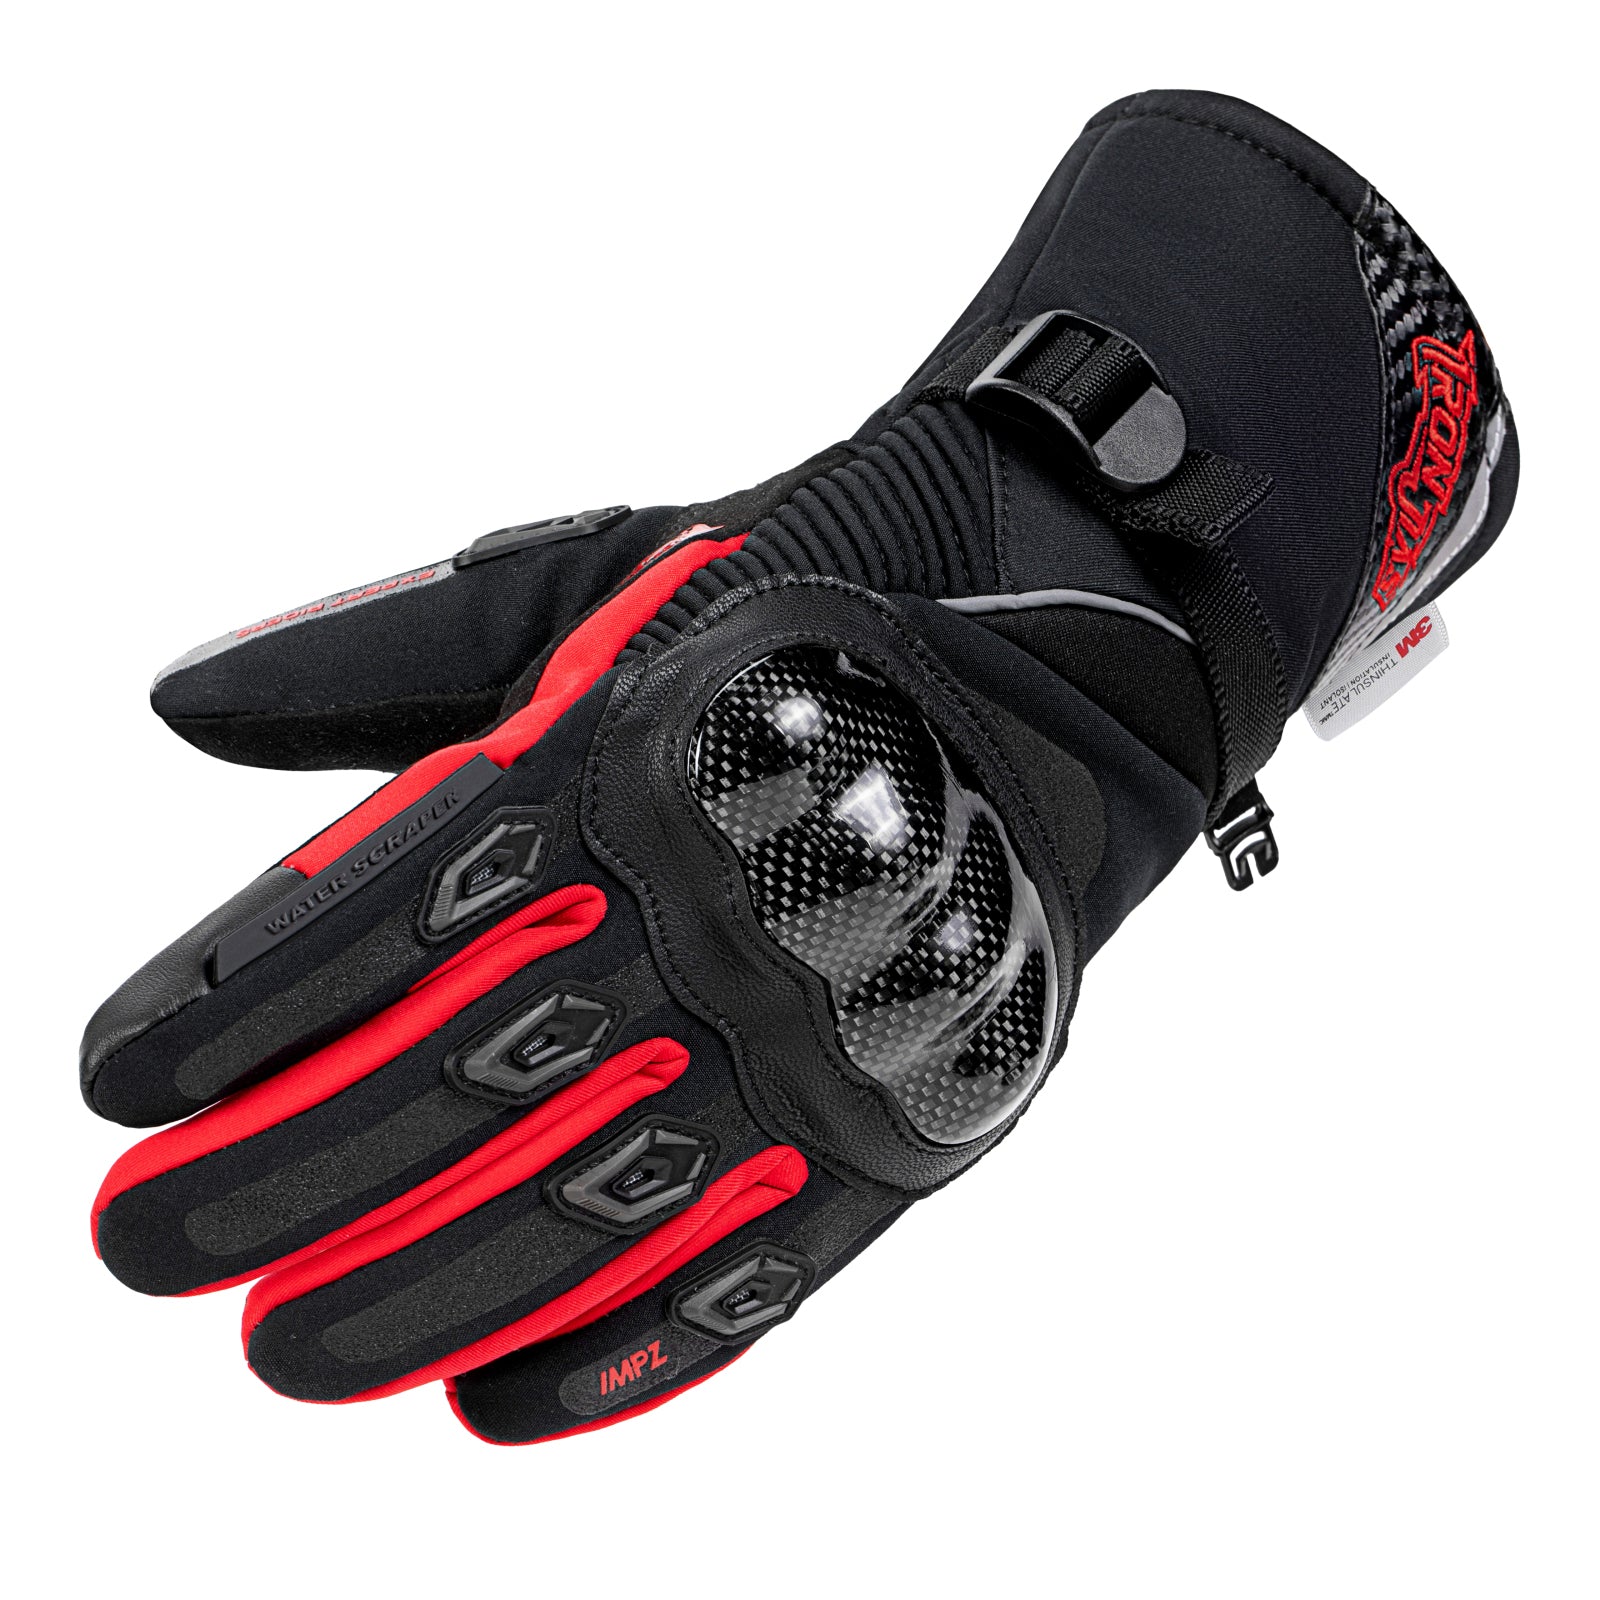 Comfortable Waterproof Winter Motorcycle Gloves